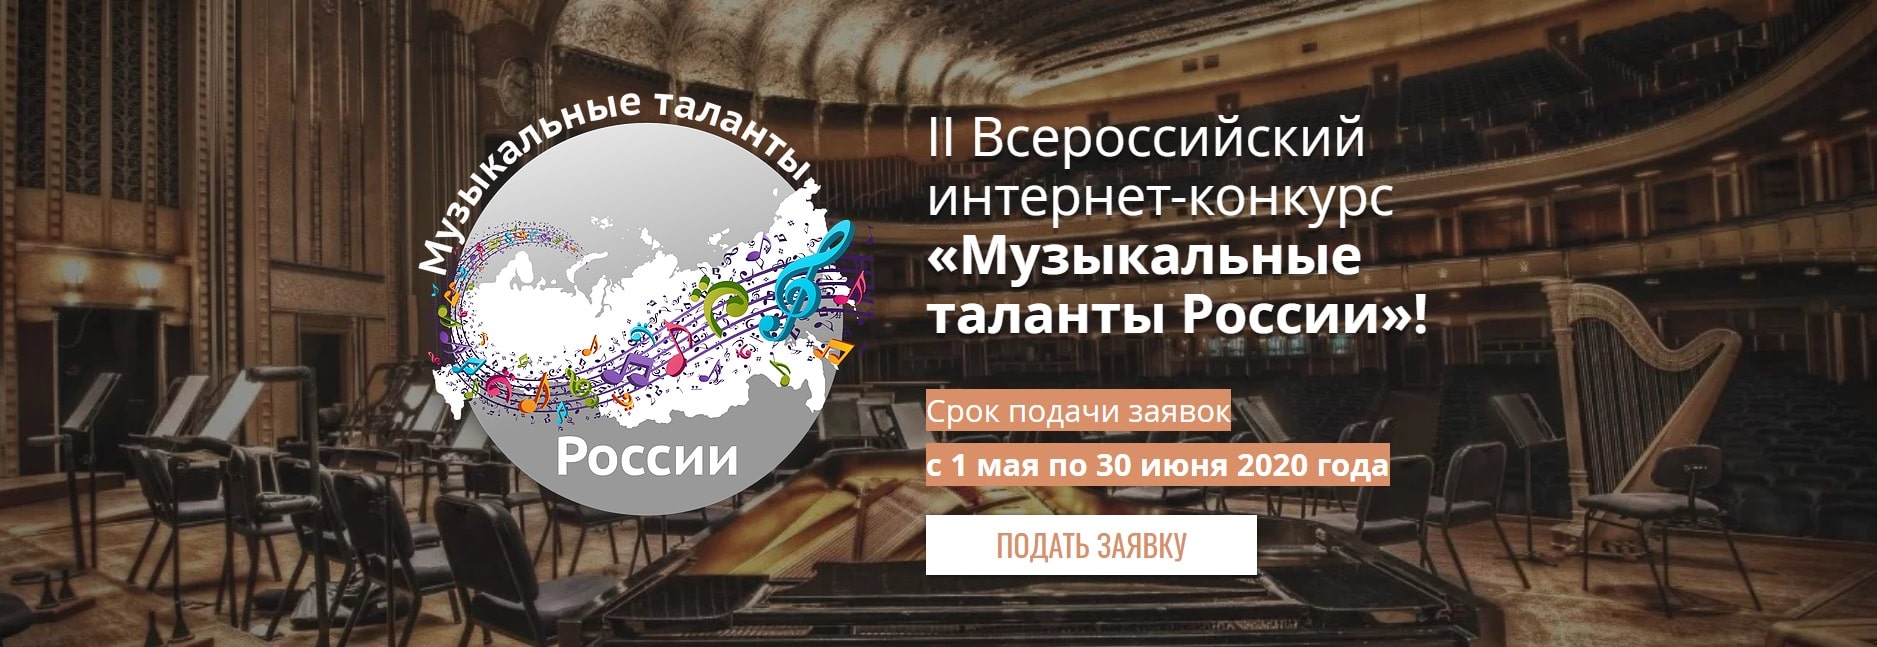 II Всероссийский интернет-конкурс «Музыкальные таланты России»